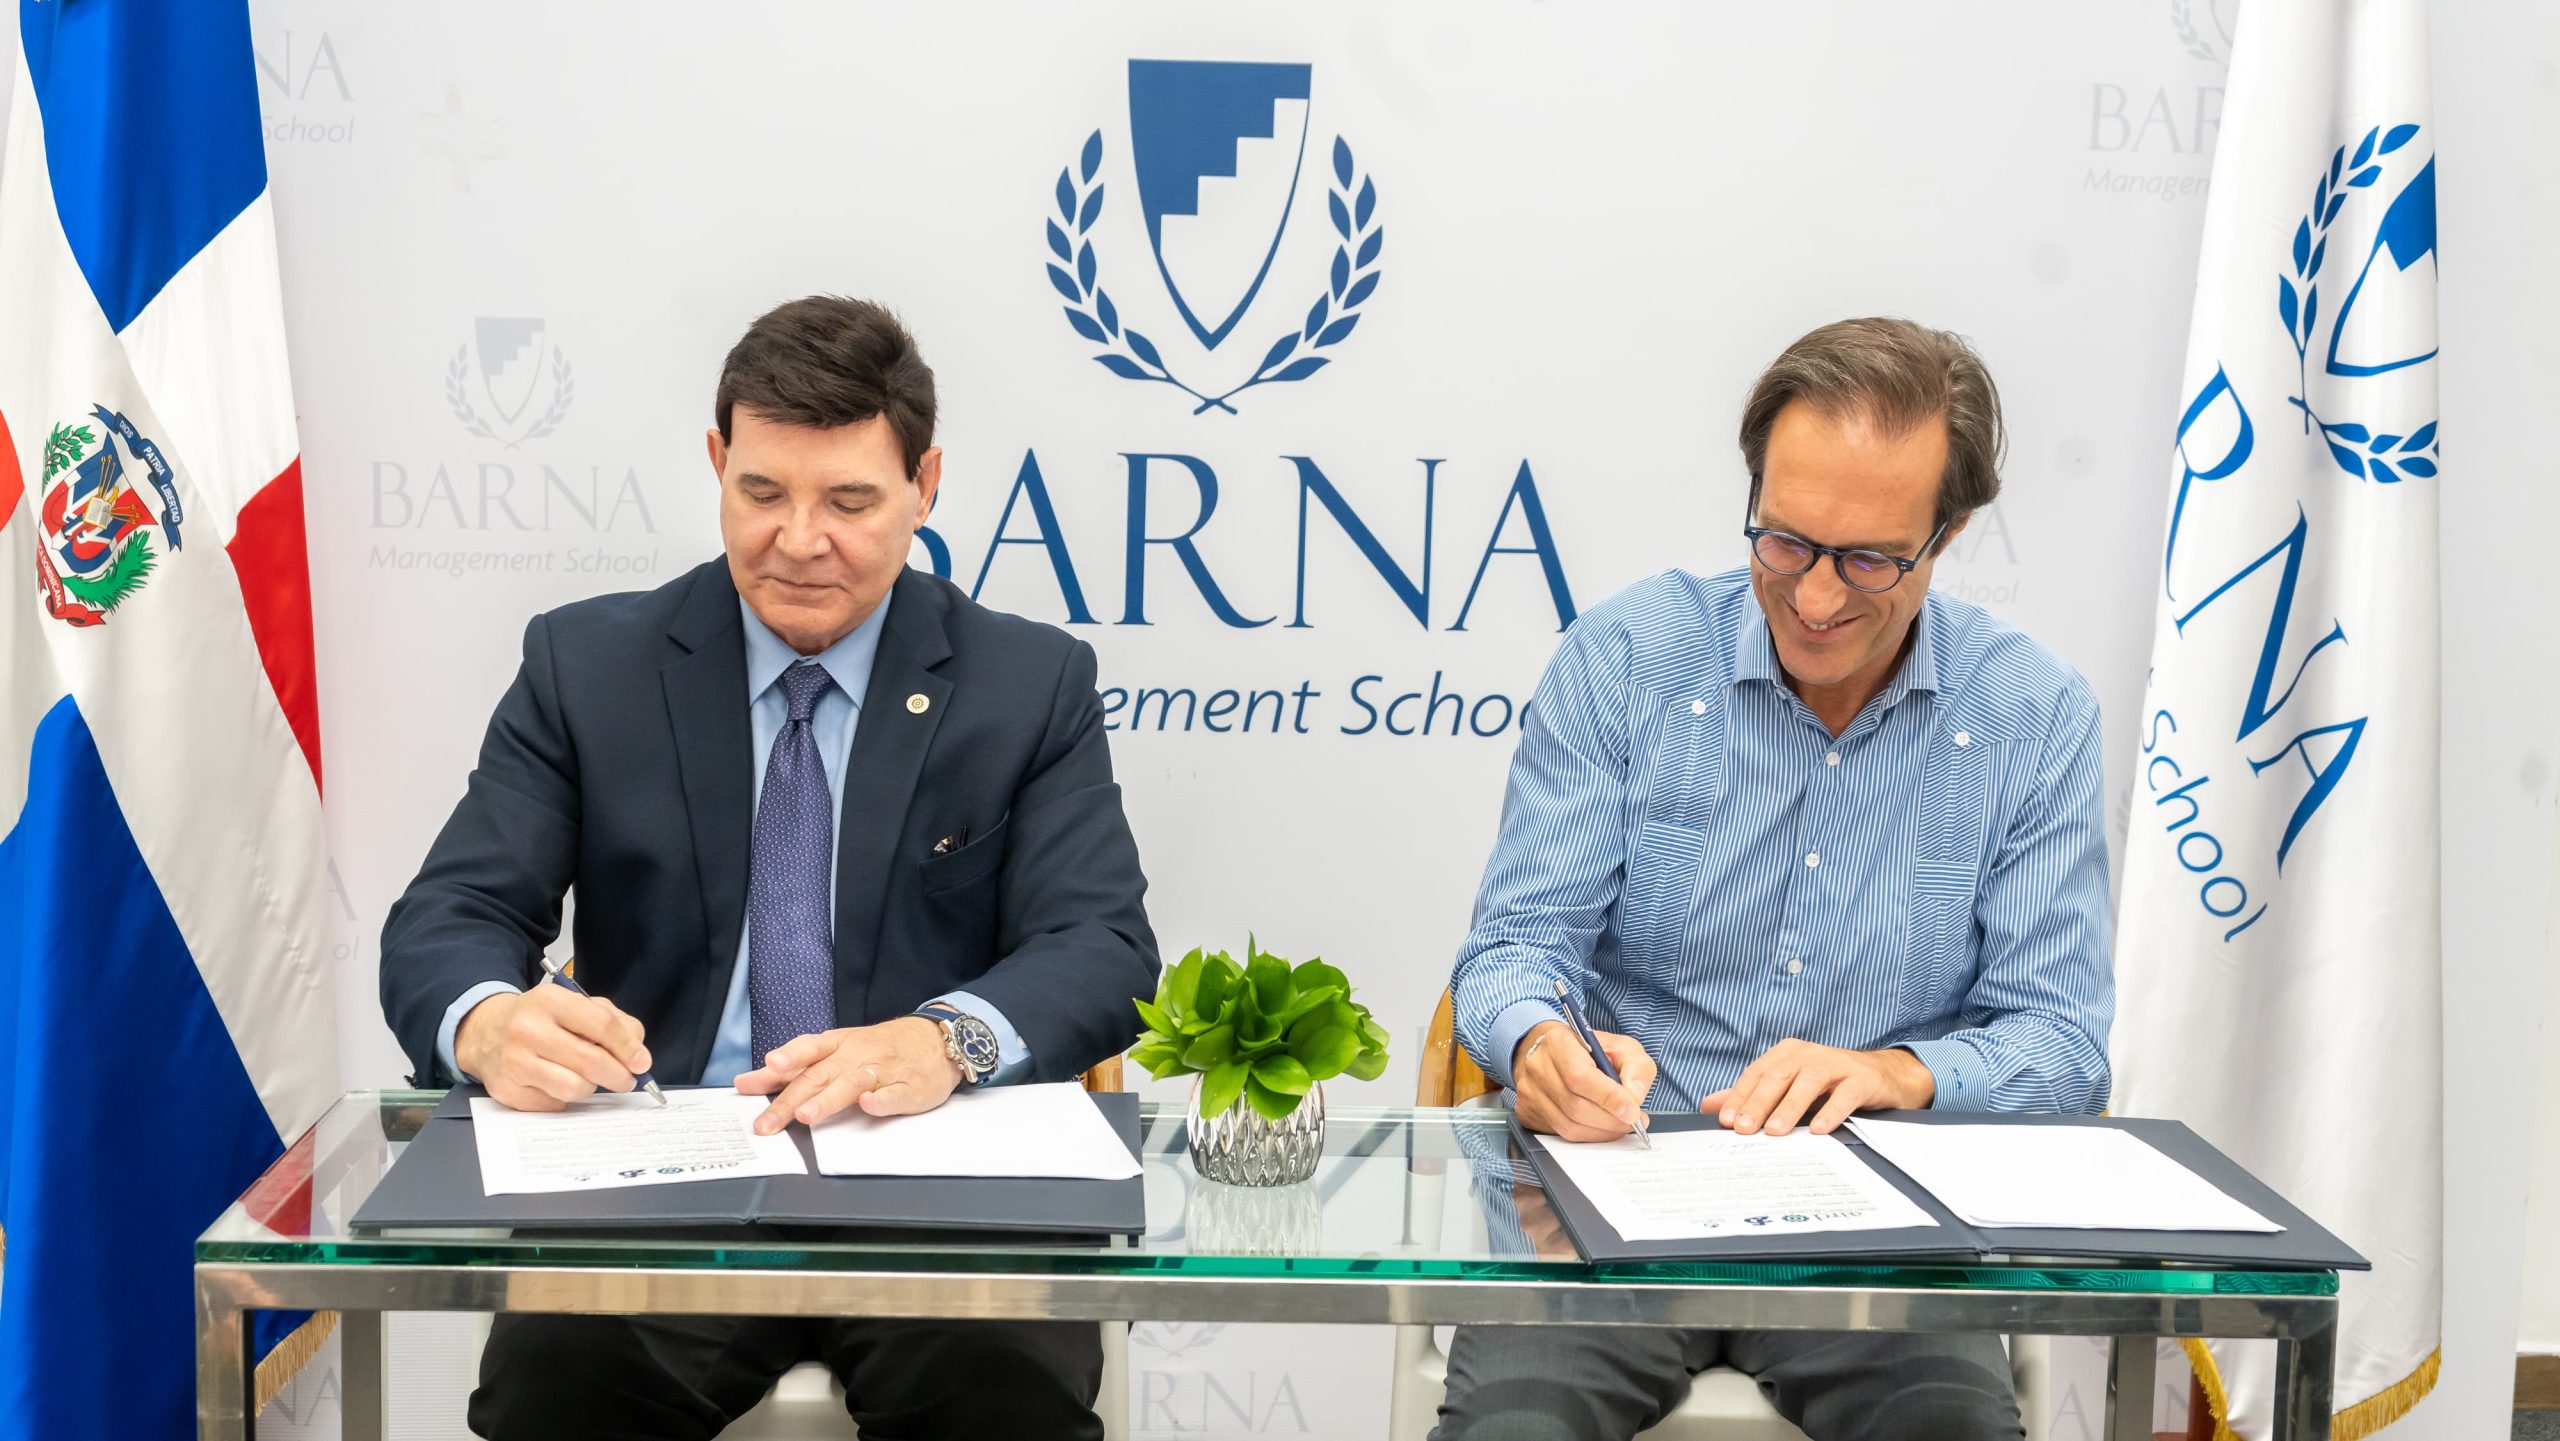 AIRD y Barna Business School Firman Convenio de Cooperación para Impulsar la Excelencia Empresarial